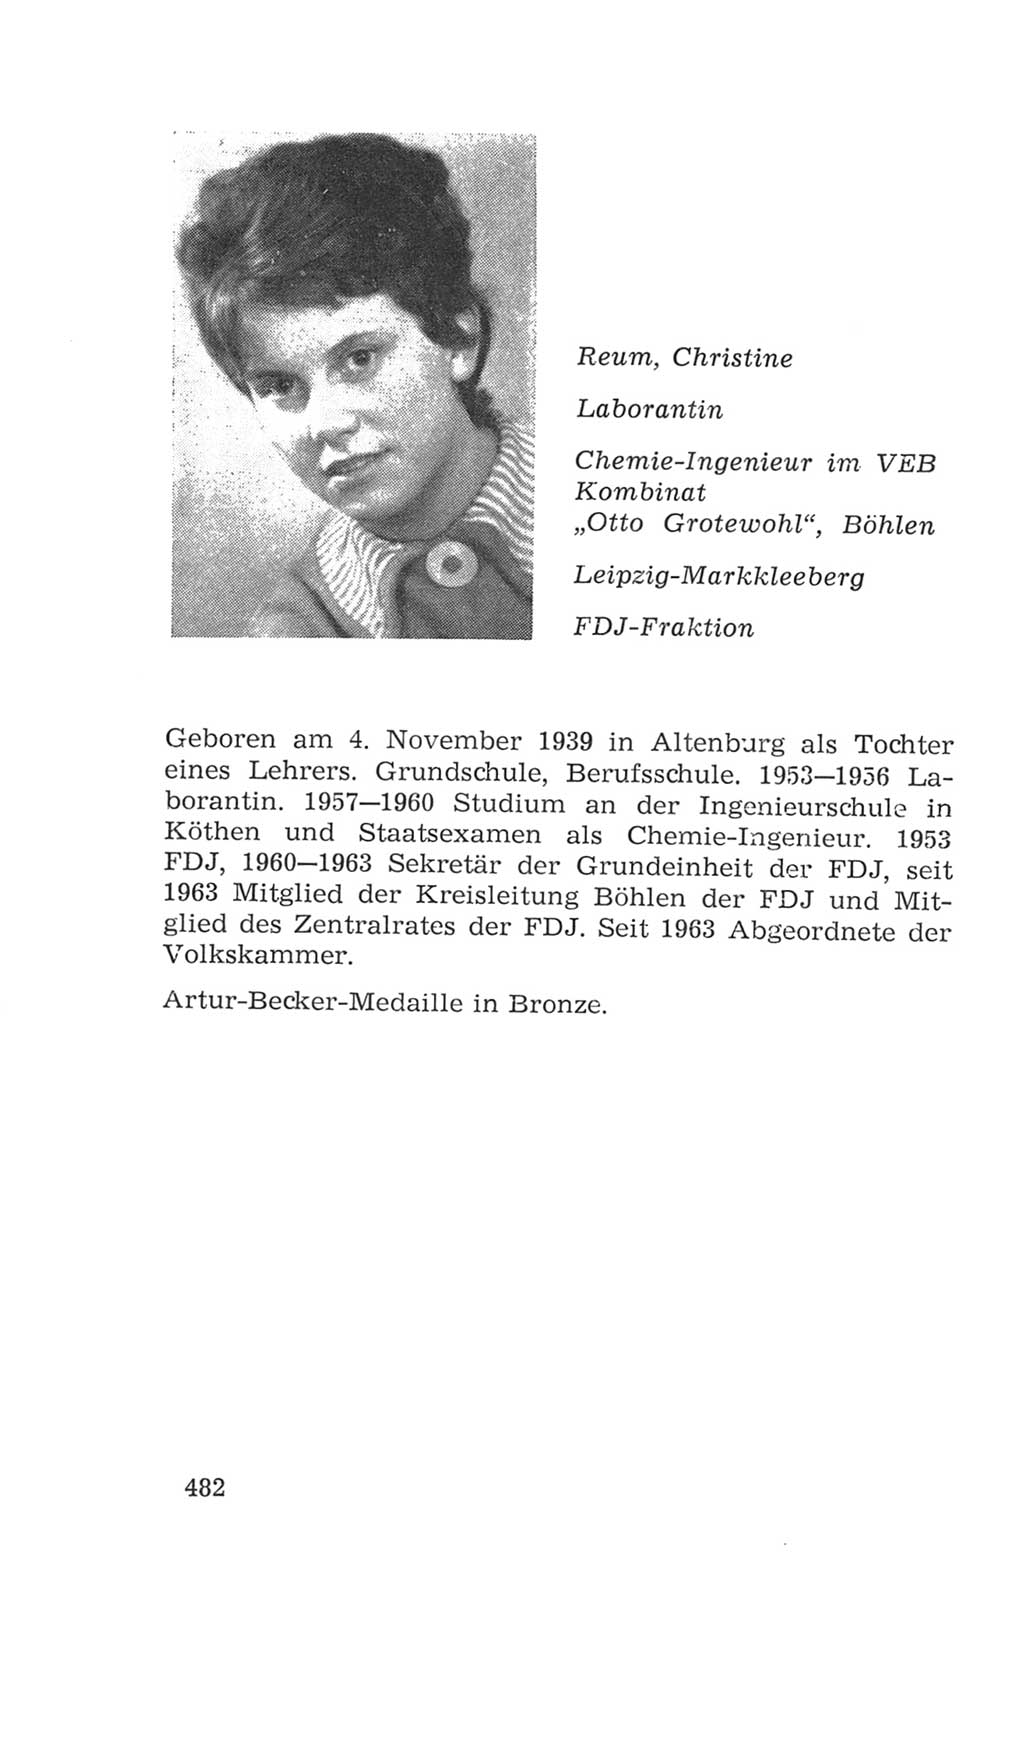 Volkskammer (VK) der Deutschen Demokratischen Republik (DDR), 4. Wahlperiode 1963-1967, Seite 482 (VK. DDR 4. WP. 1963-1967, S. 482)